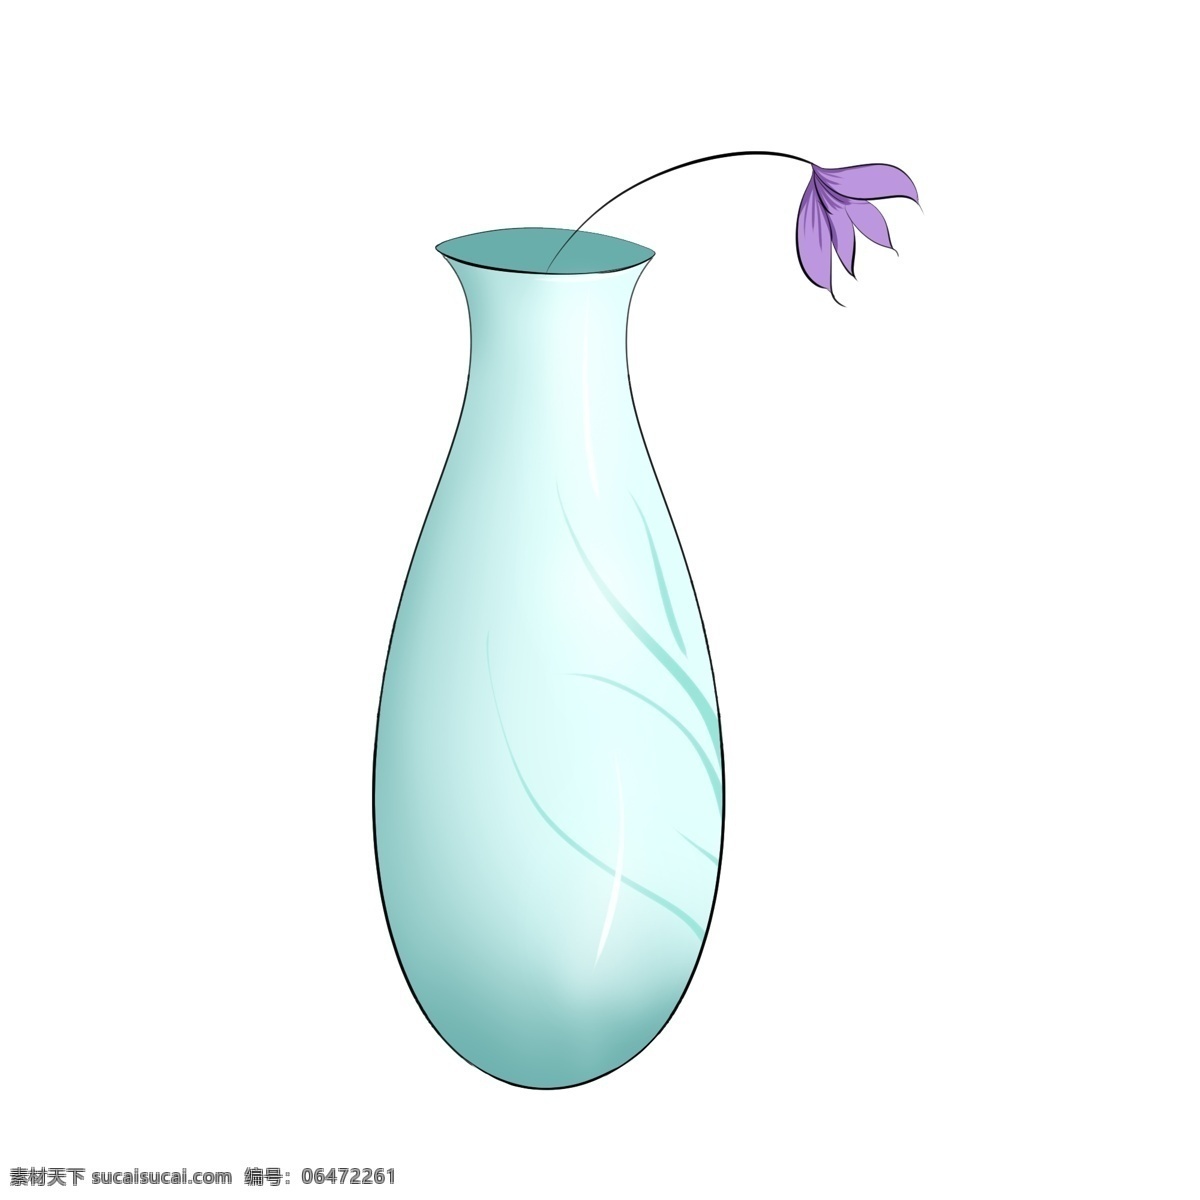 紫色 插花 瓷瓶 插画 紫色的鲜花 鲜花花卉 漂亮 手绘插花瓷瓶 插花瓷瓶插画